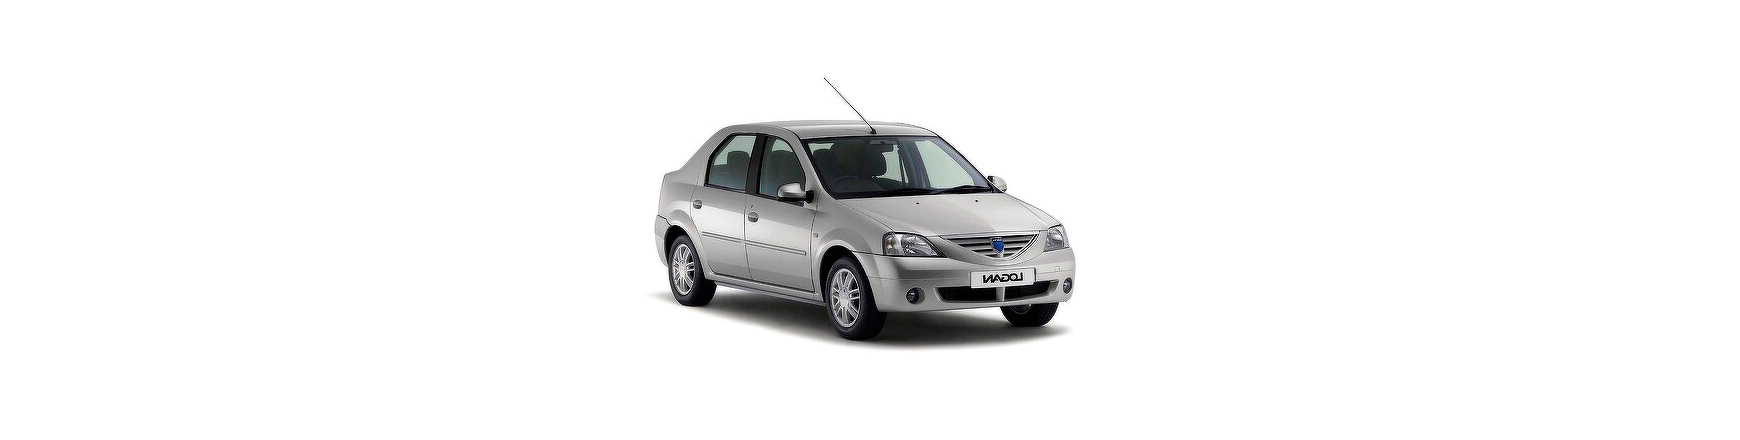 Piezas y Recambios de Dacia Logan de 2005 a 2008.  Consulte en Veramauto.es